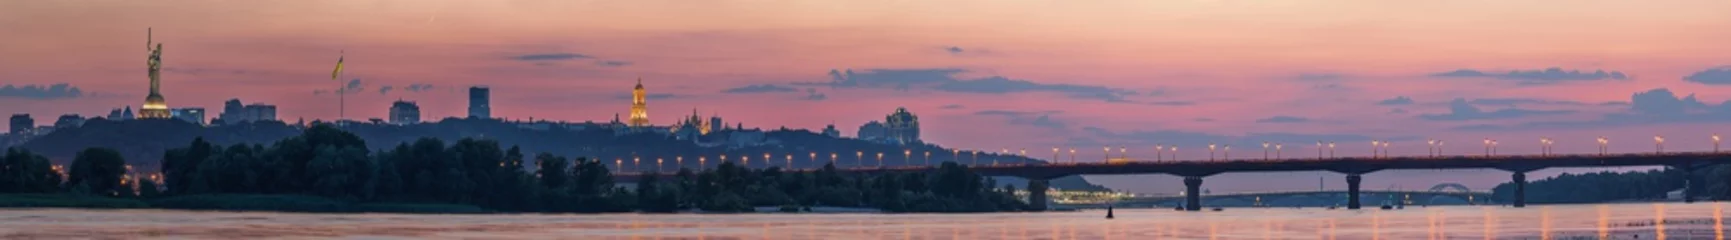 Poster Uitzicht op Kiev Pechersk Lavra, Motherland Monument, Kiev bruggen en de rivier de Dnjepr, na zonsondergang wordt een dunne halve maan aan de oranje hemel gezien. © underwaterstas